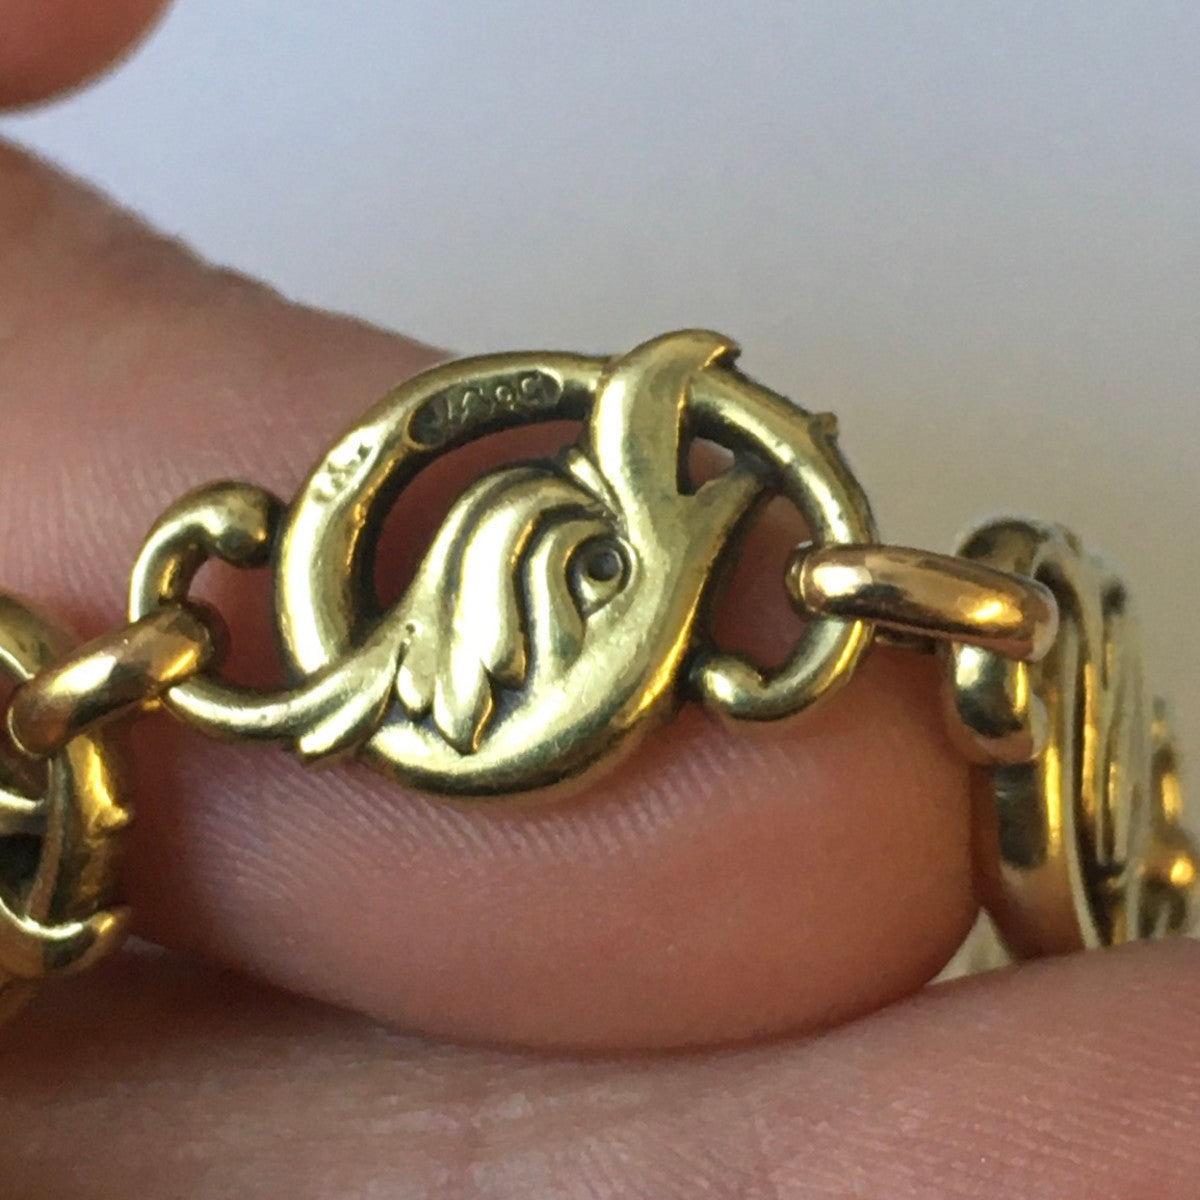 Carl Faberge Russian Art Nouveau 18KT Yellow Gold Bracelet close-up details